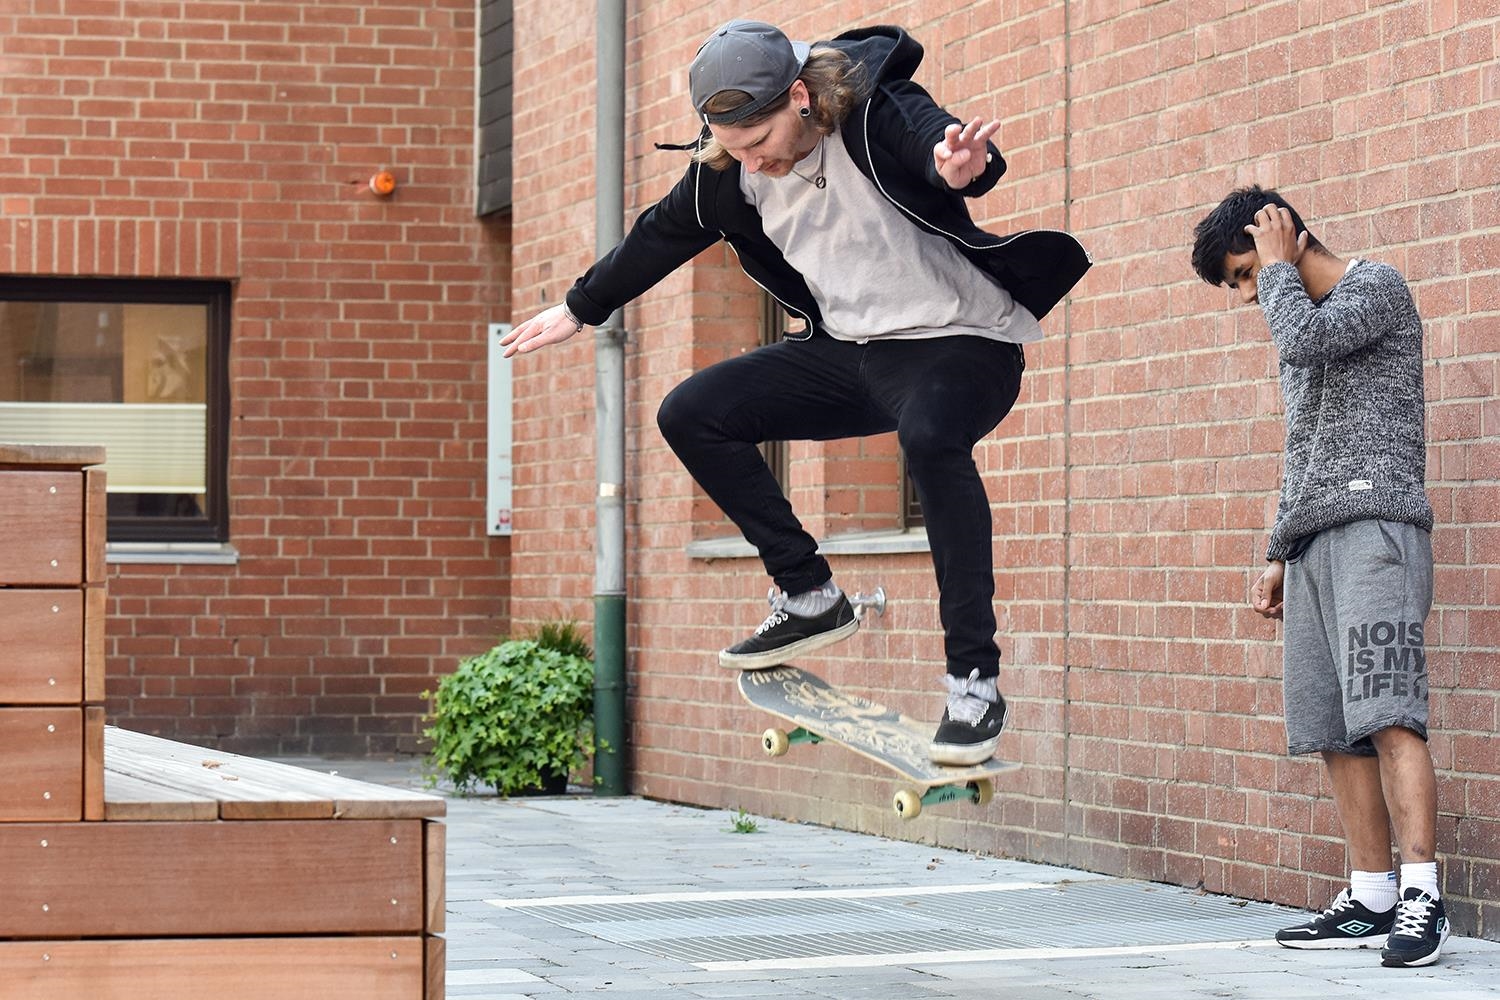 Zwei Jugendliche auf Platz mit Skateboard  (DCV / KNA)